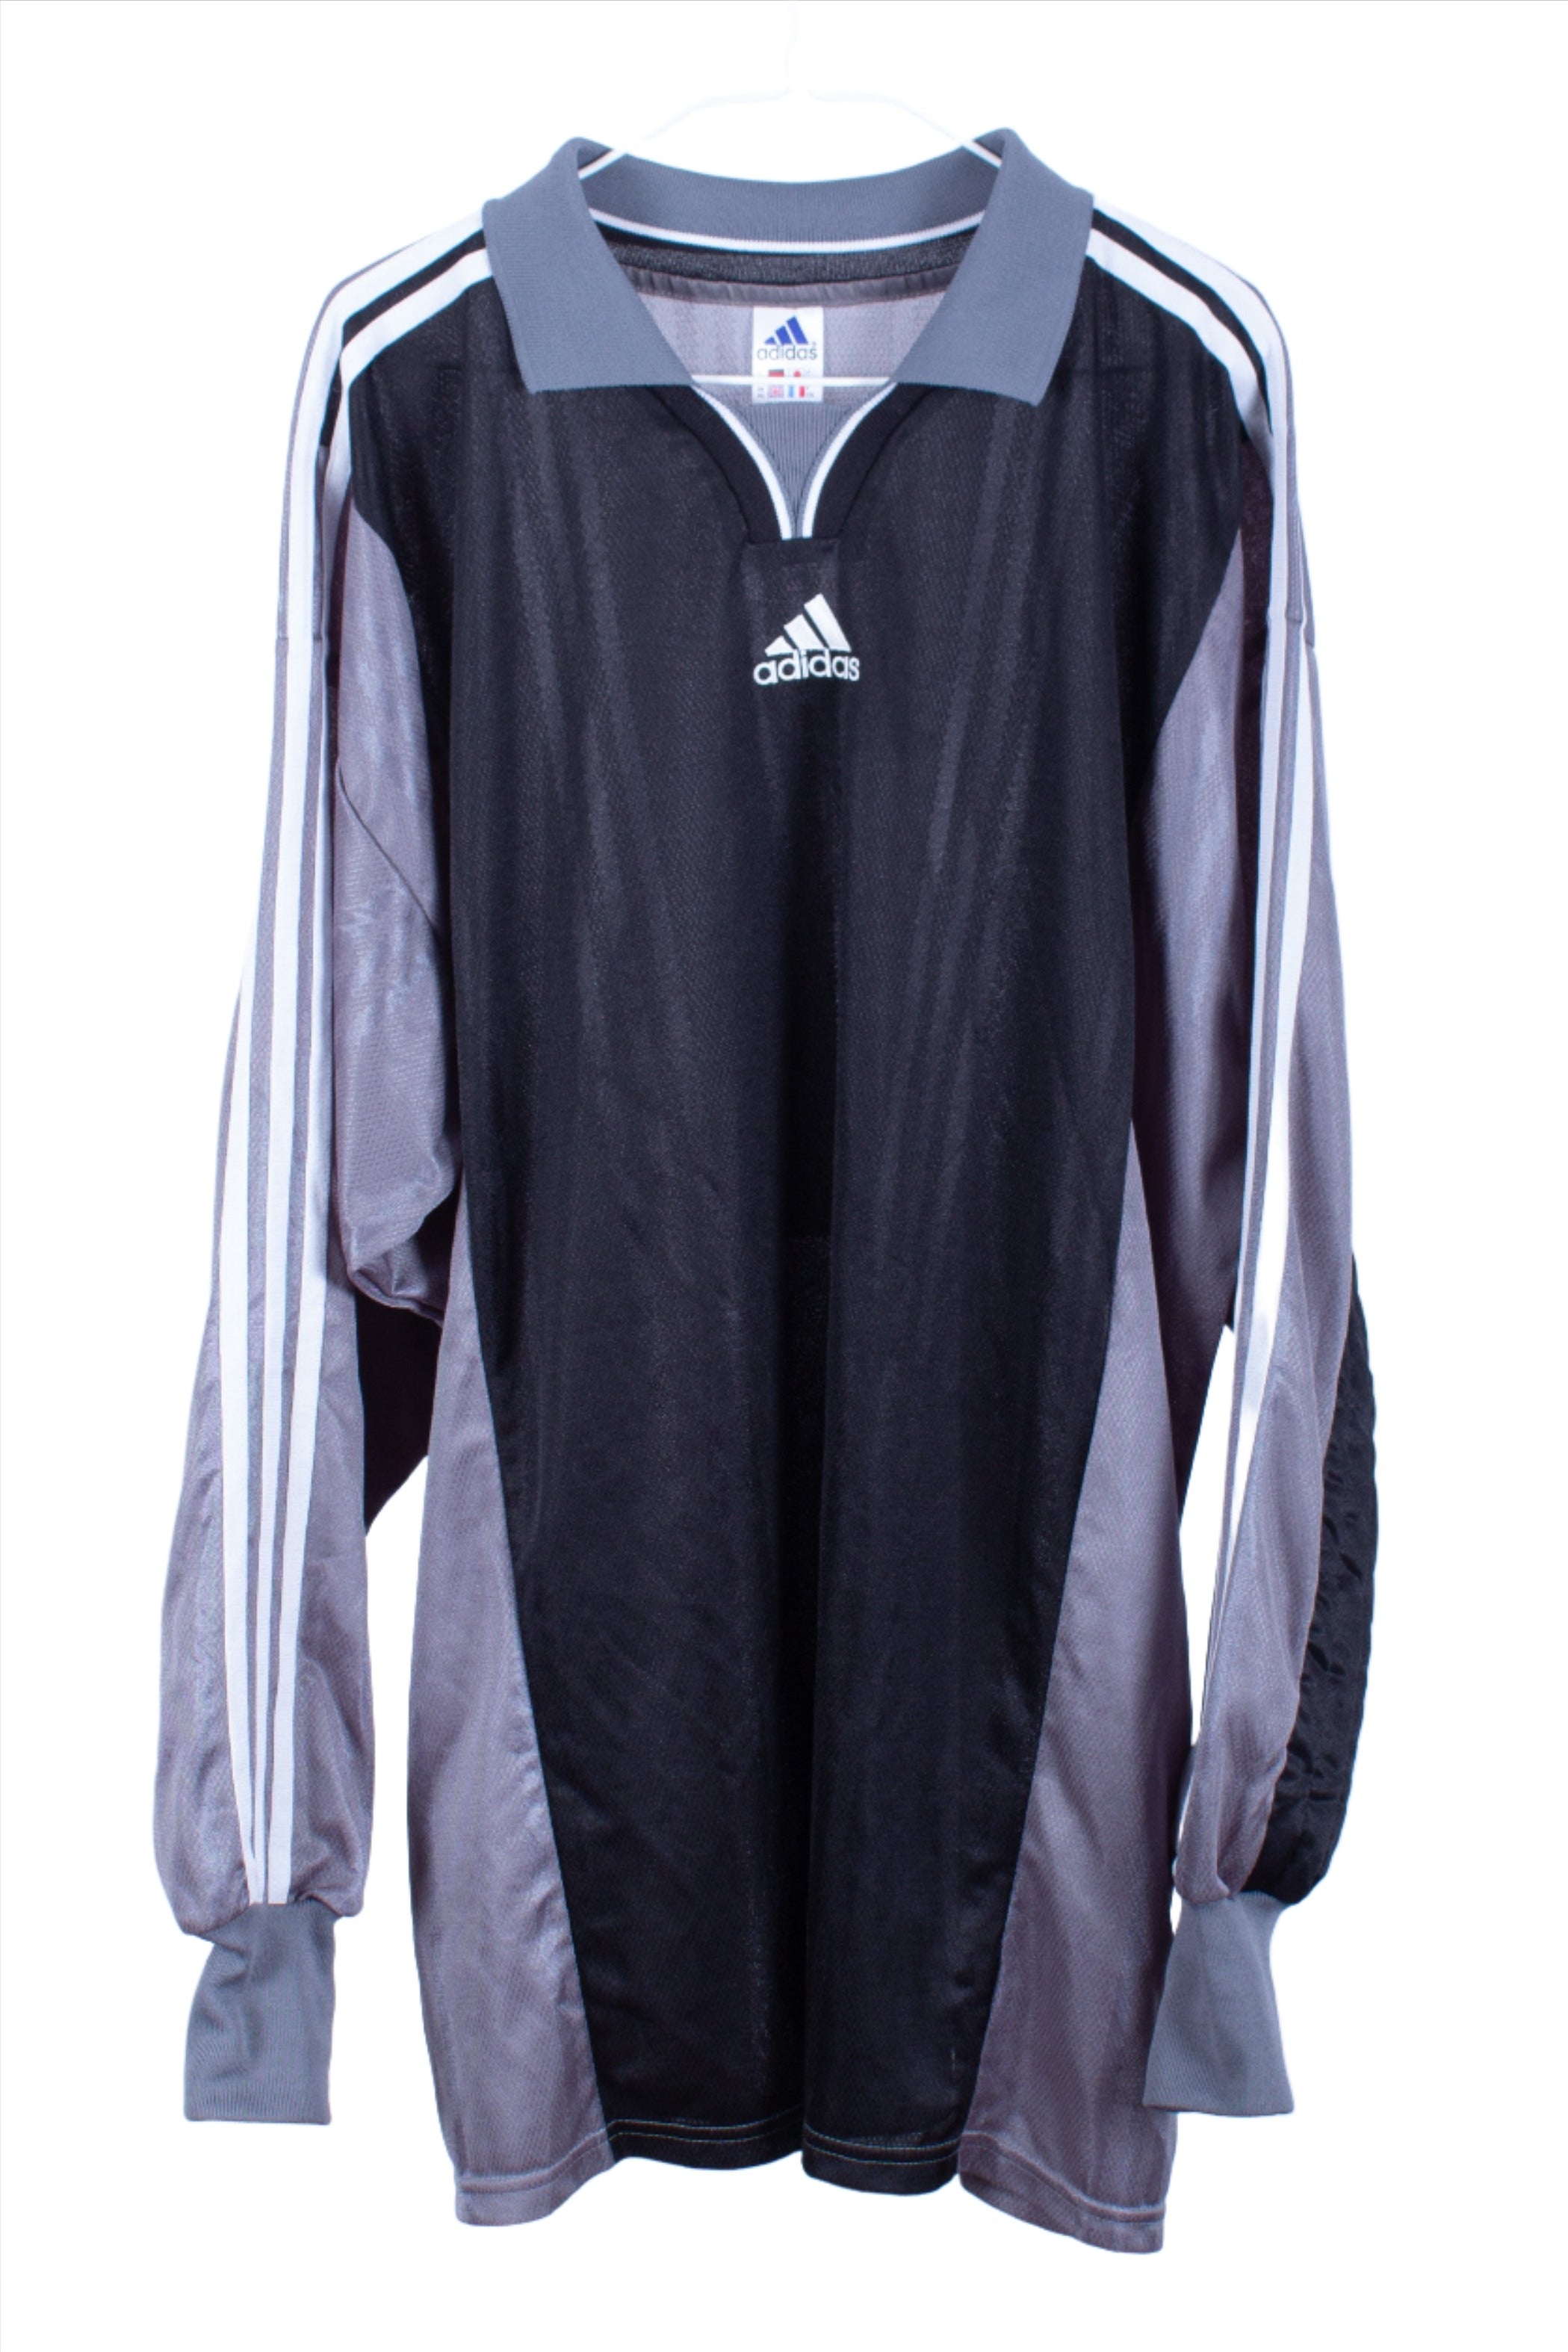 Adidas Goalkeeper Template Shirt | Vintage Goalkeeper Shirt